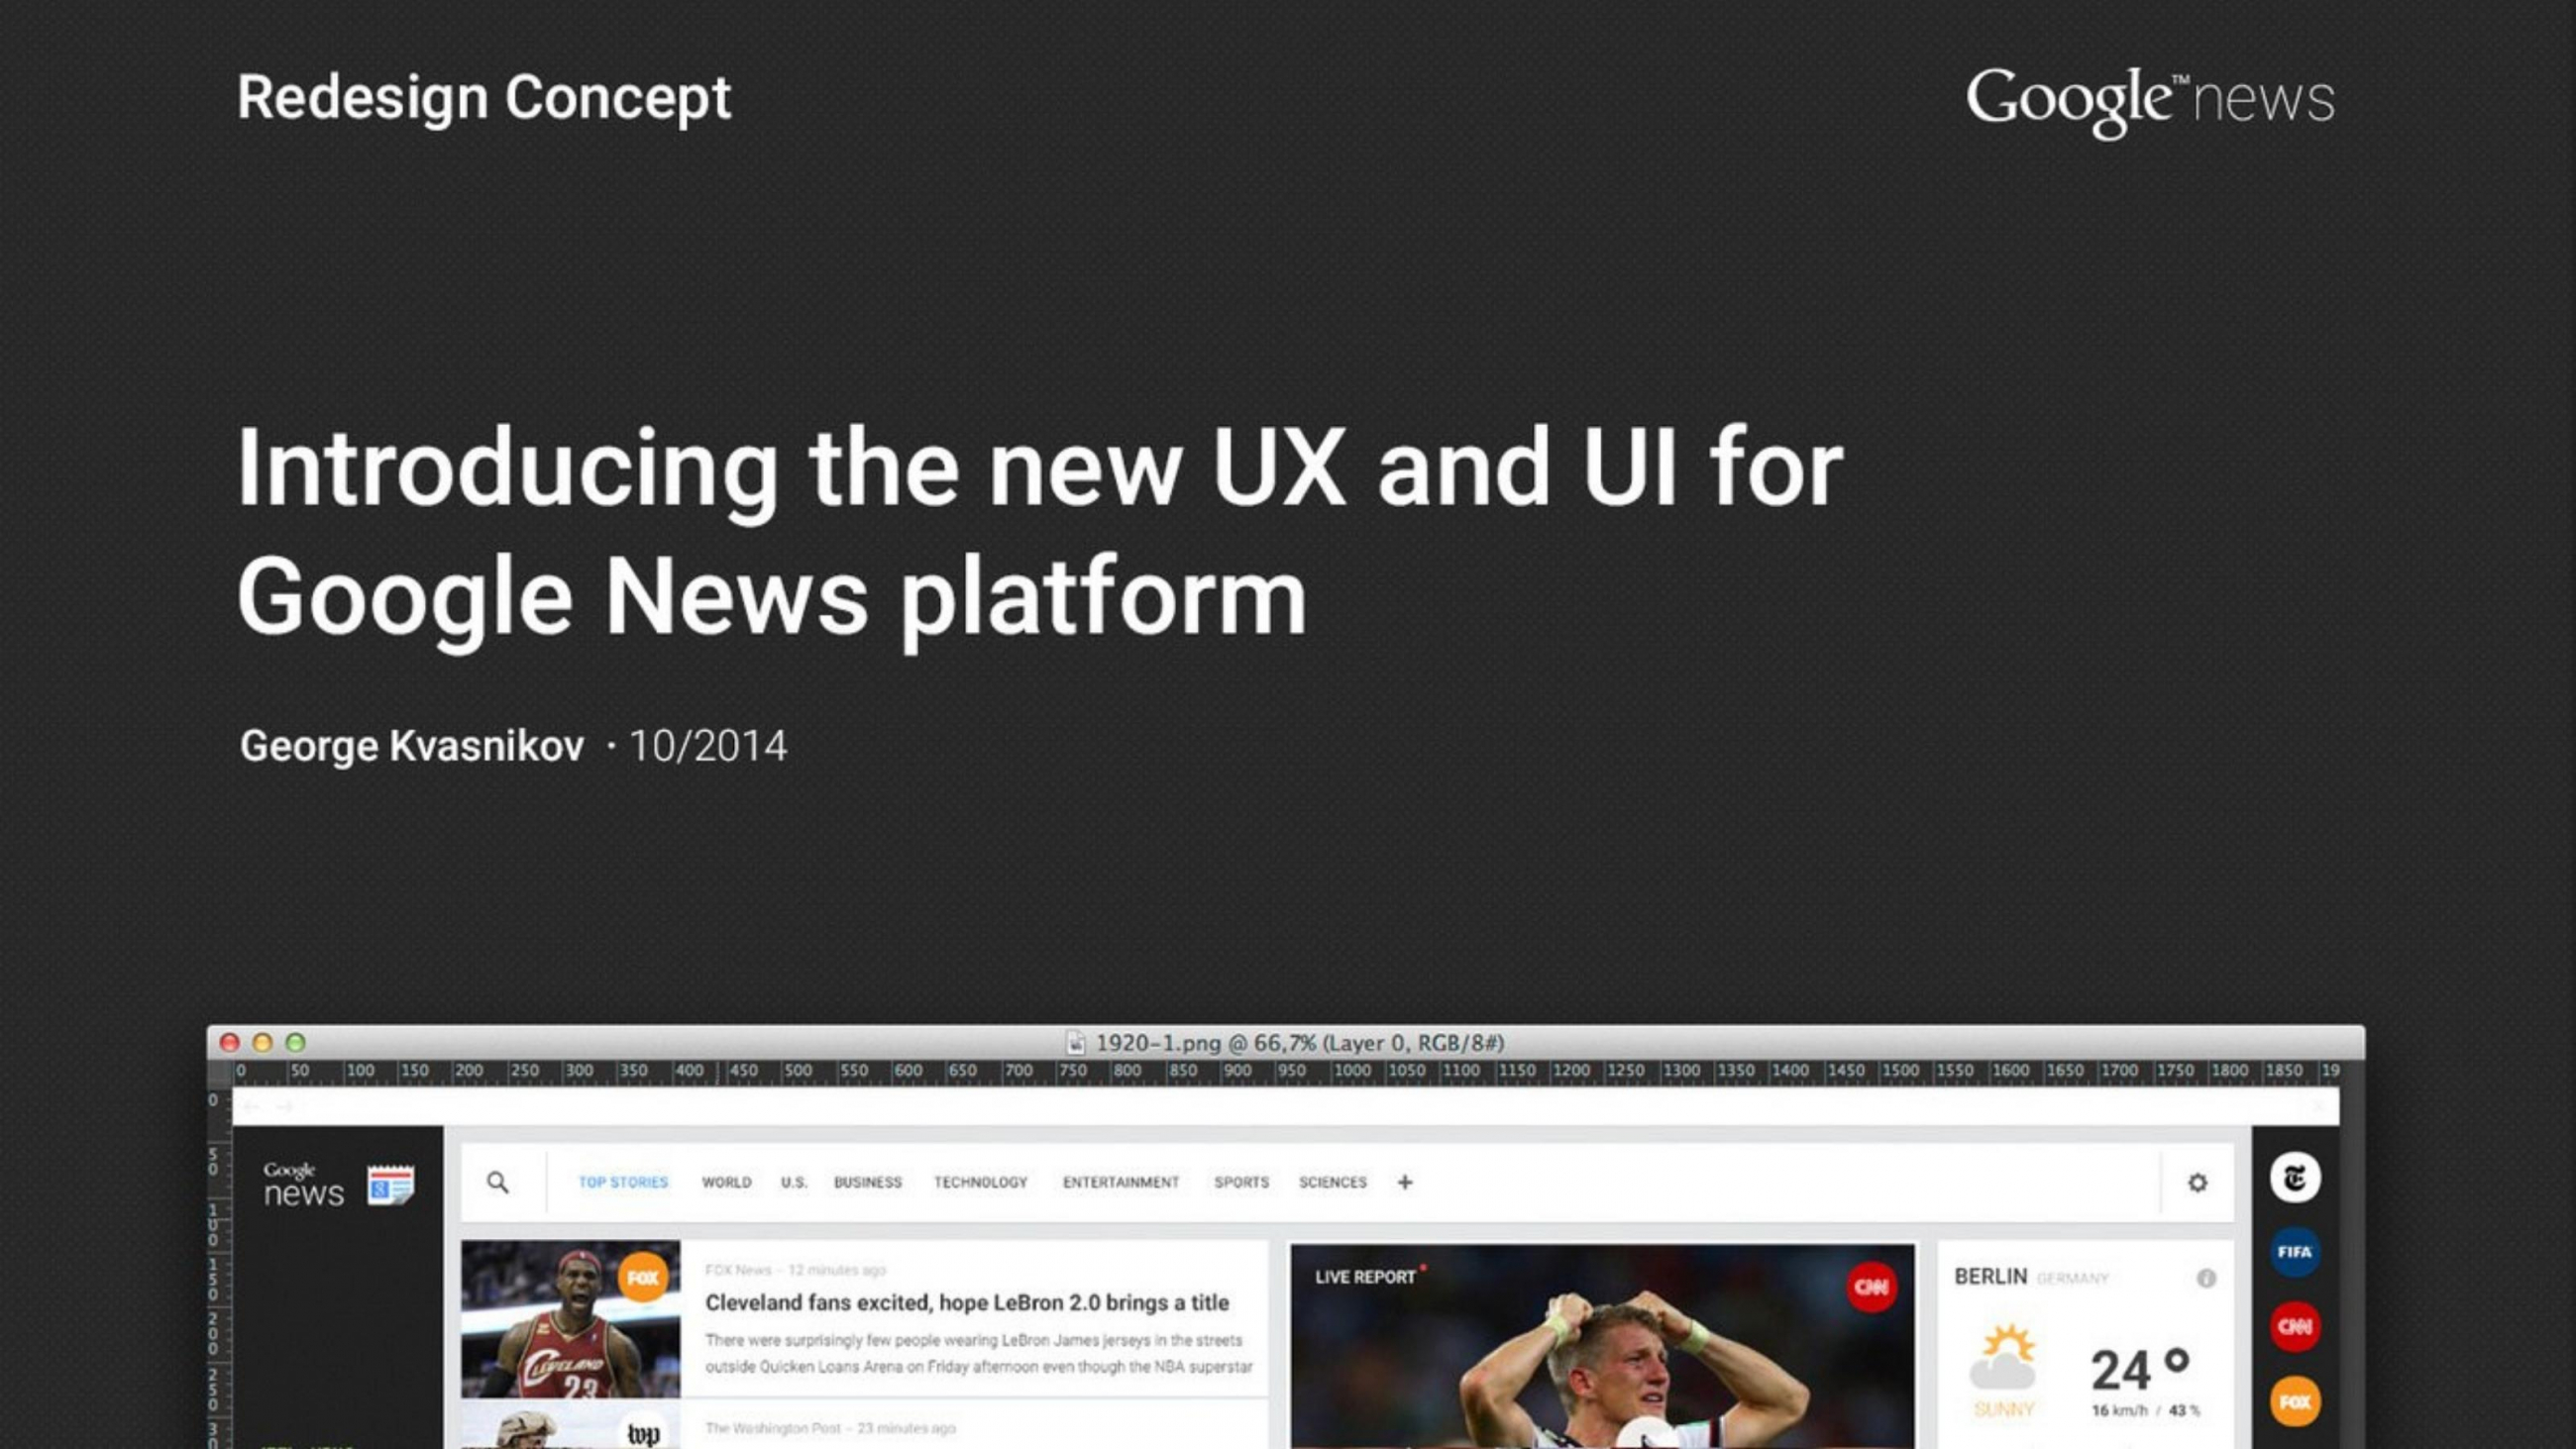 Website-Screenshot vom Redesign-Konzept mit der Überschrift "Introducing the new UX and UI for Goggle News plattform"